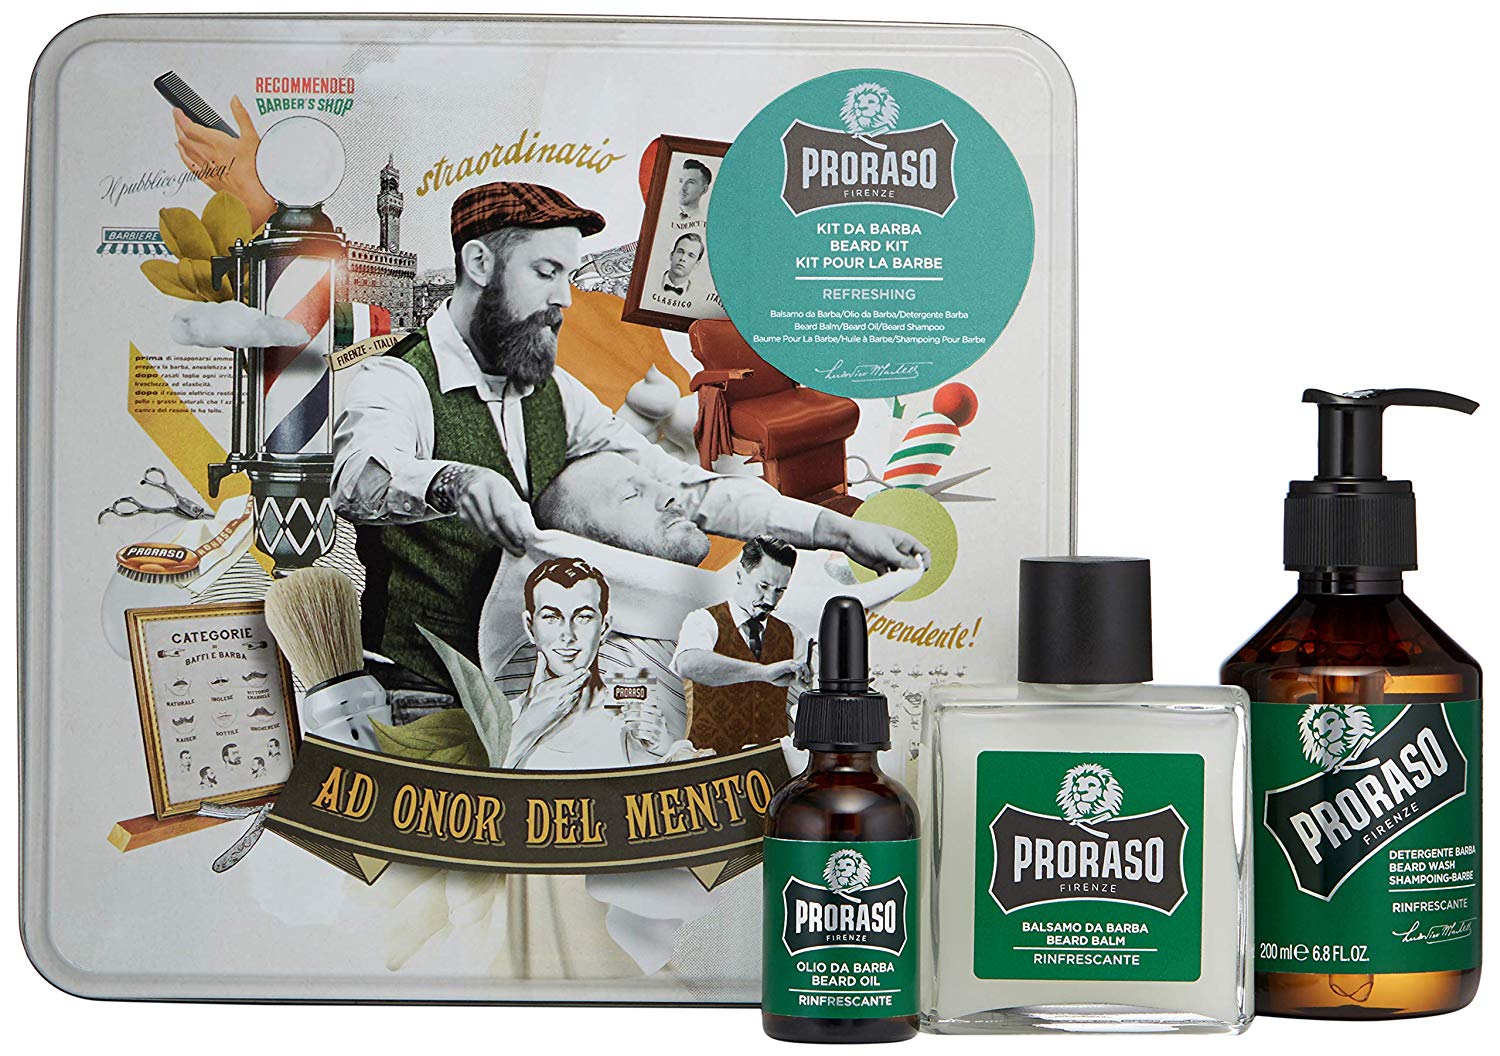 Proraso Beard Kit Refresh - sada na bradu v plechové krabičce s vůní eukalyptu a mentolového oleje